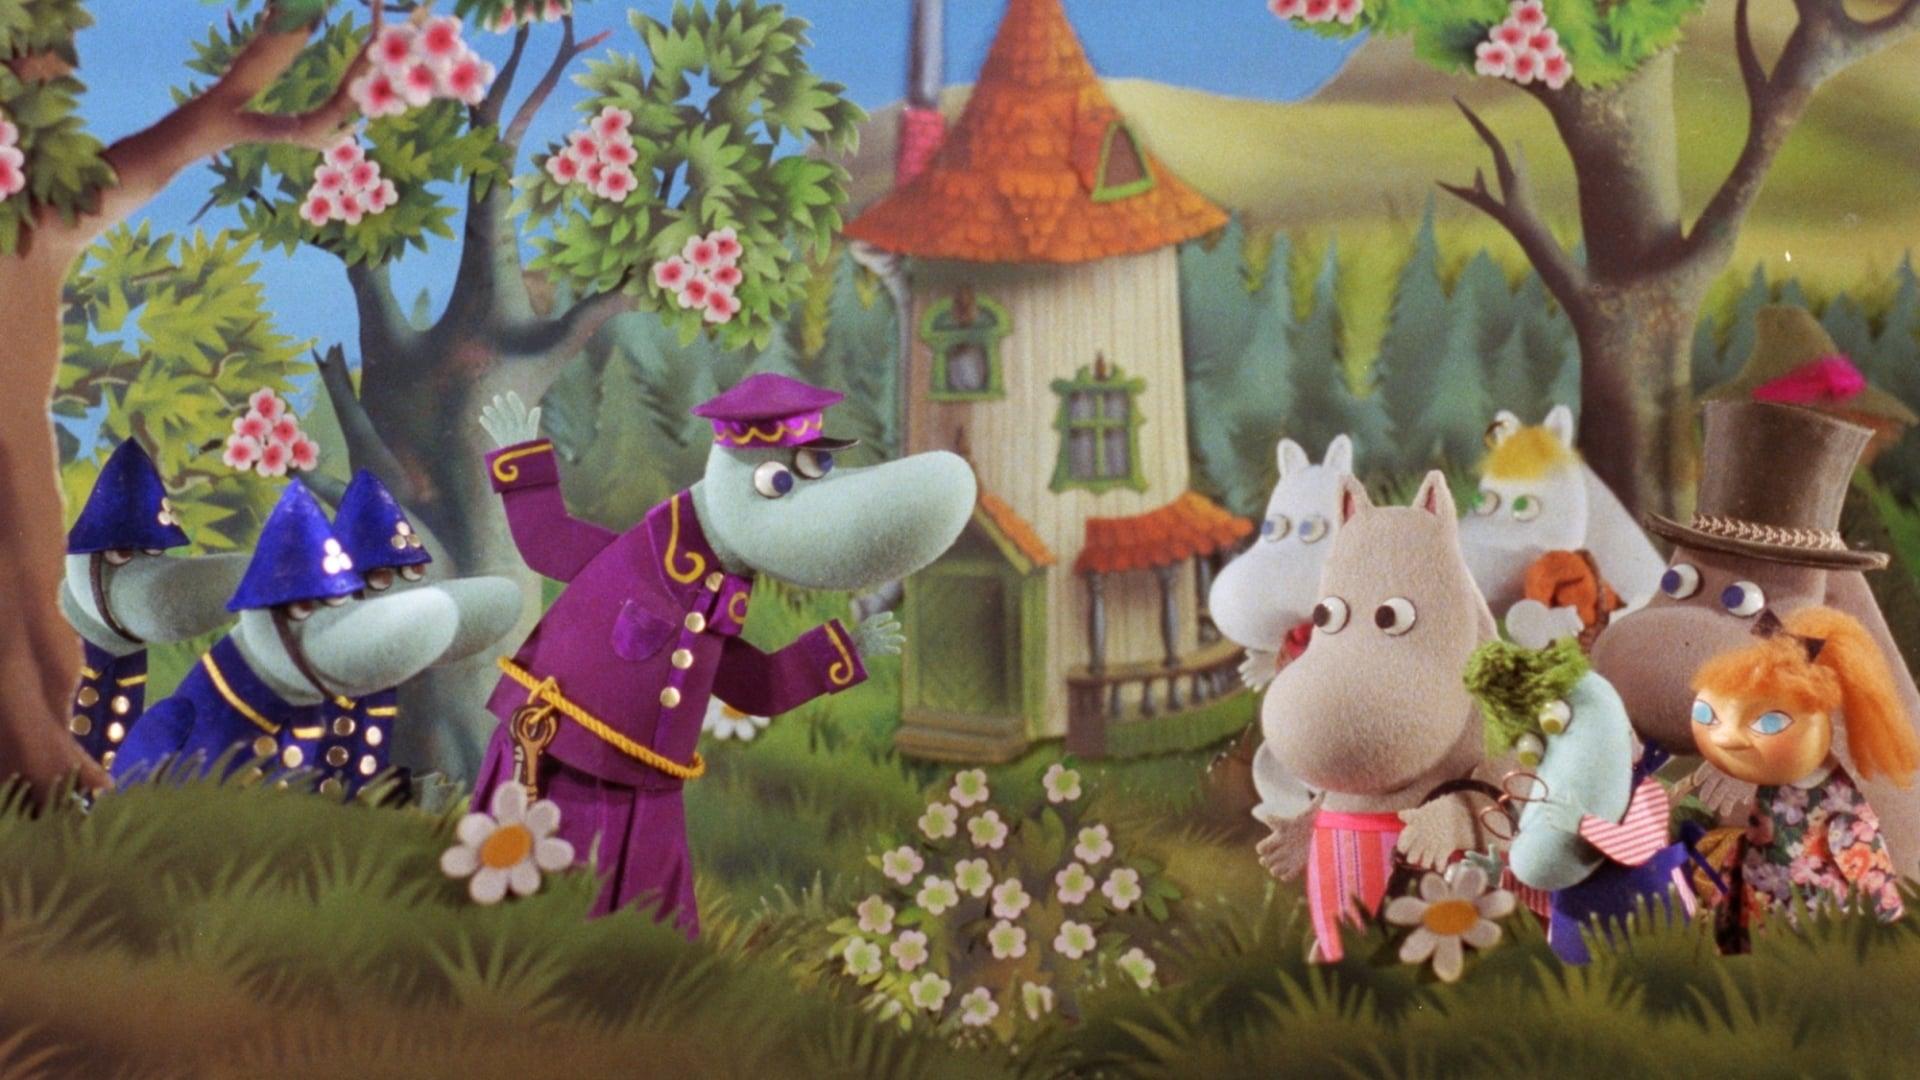 Moomin and Midsummer Madness backdrop